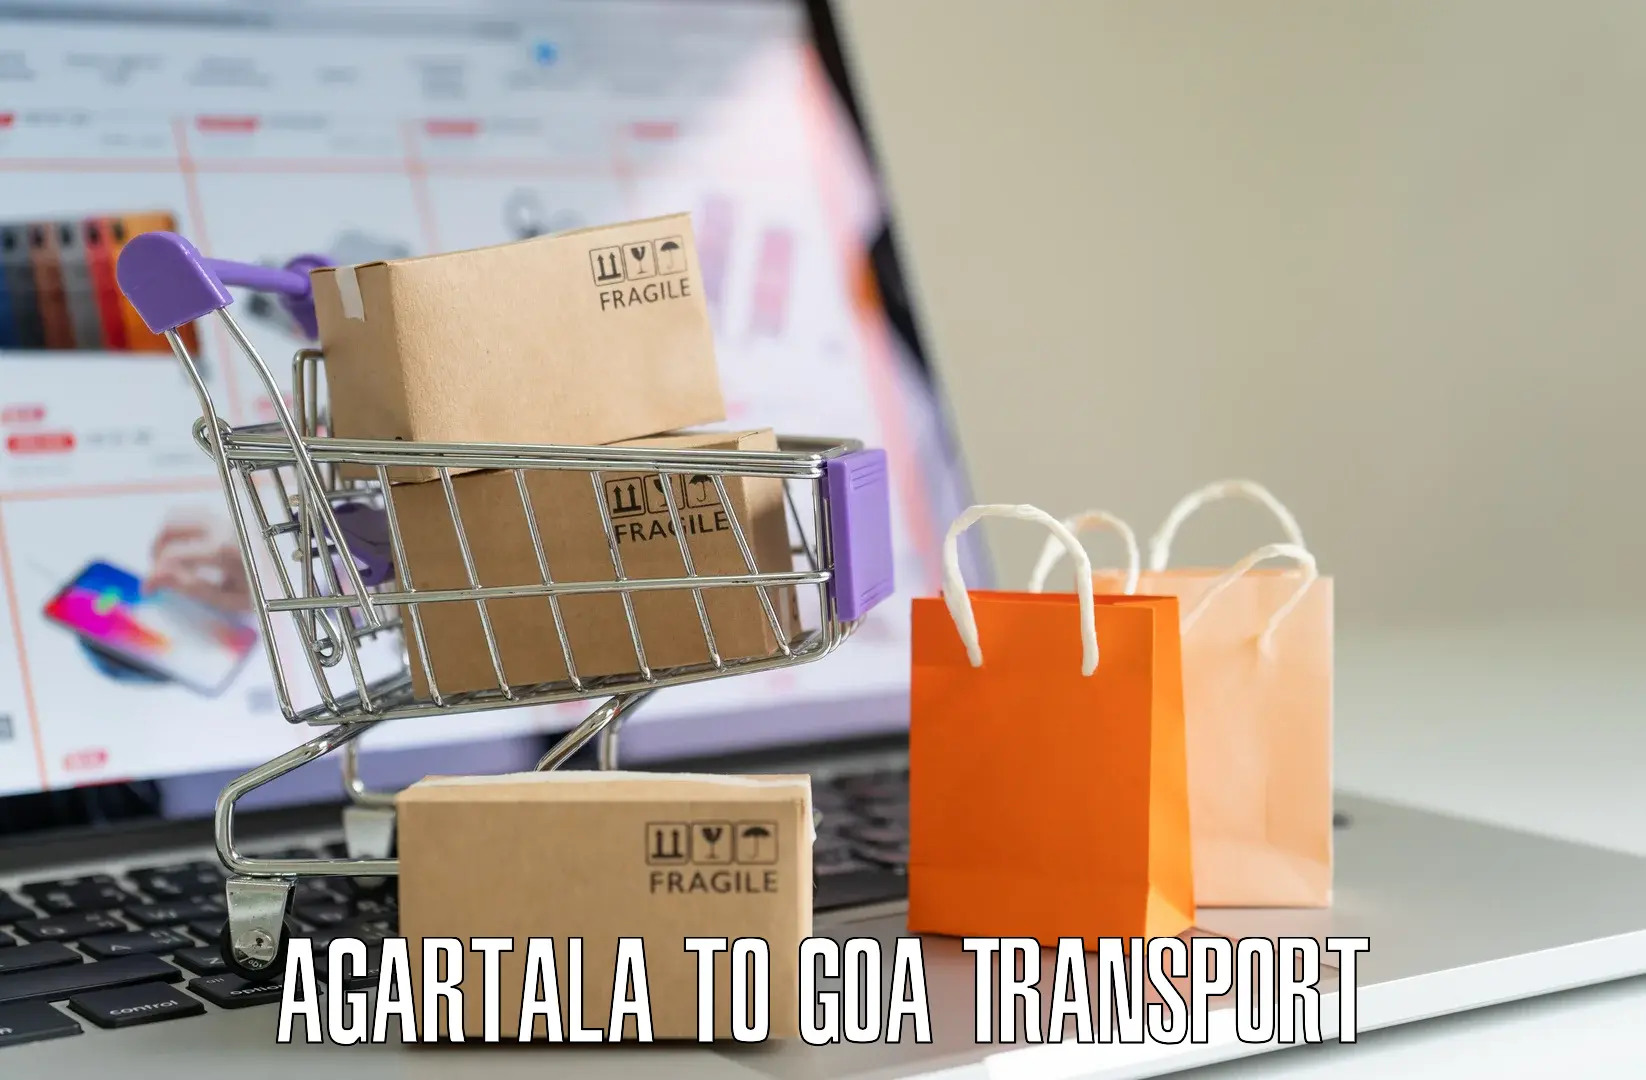 Two wheeler parcel service Agartala to NIT Goa